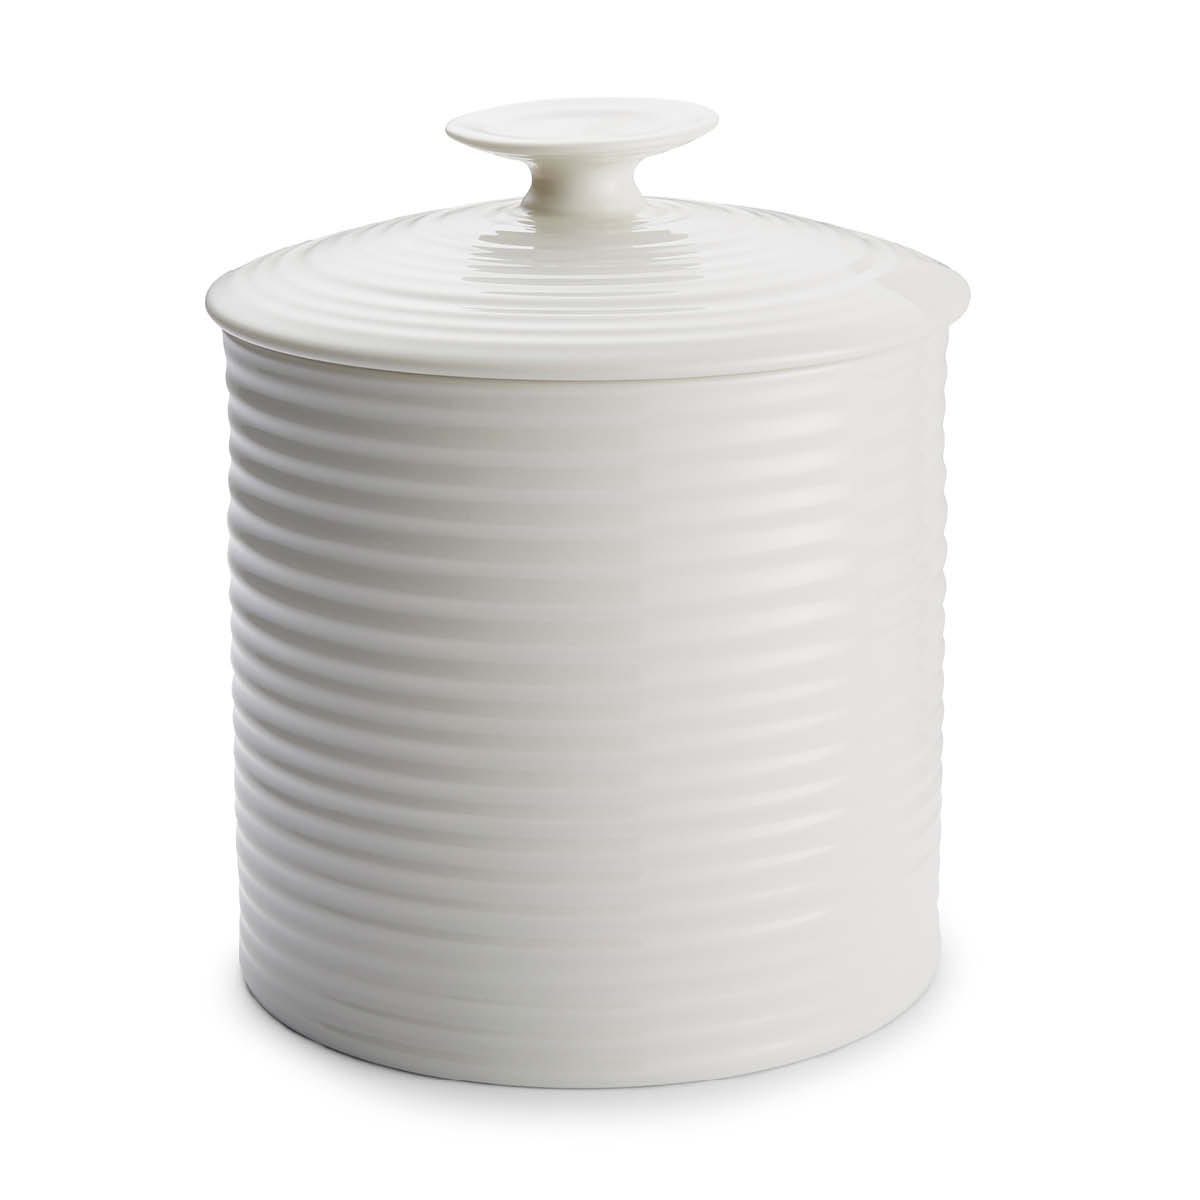 Sophie Conran Large Storage Jar, White